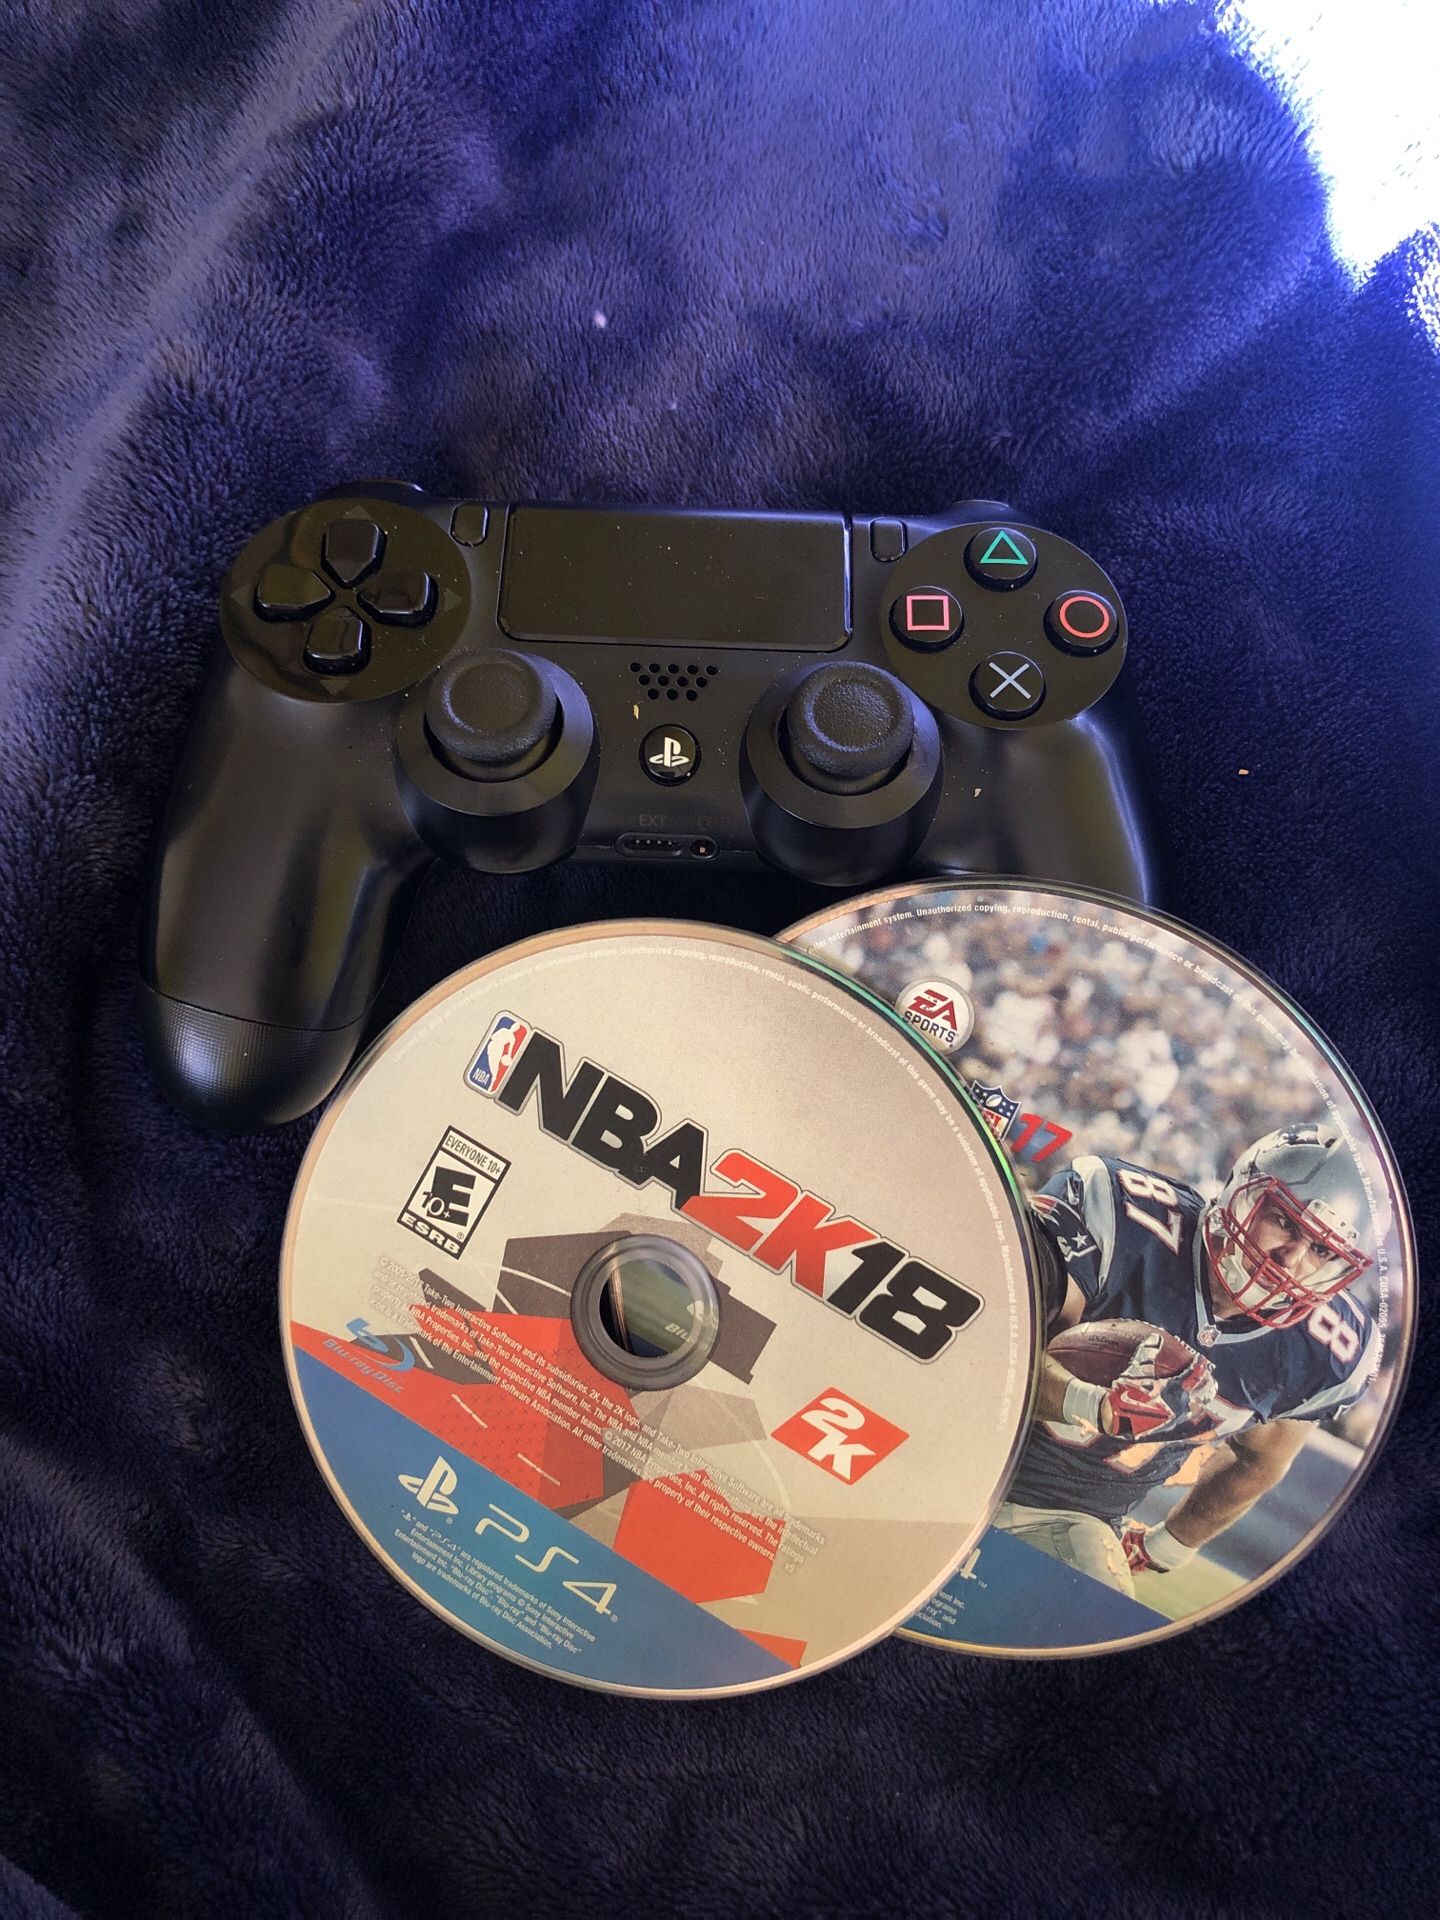 PS4 controller w/ NBA 2k18 Madden NFL 17